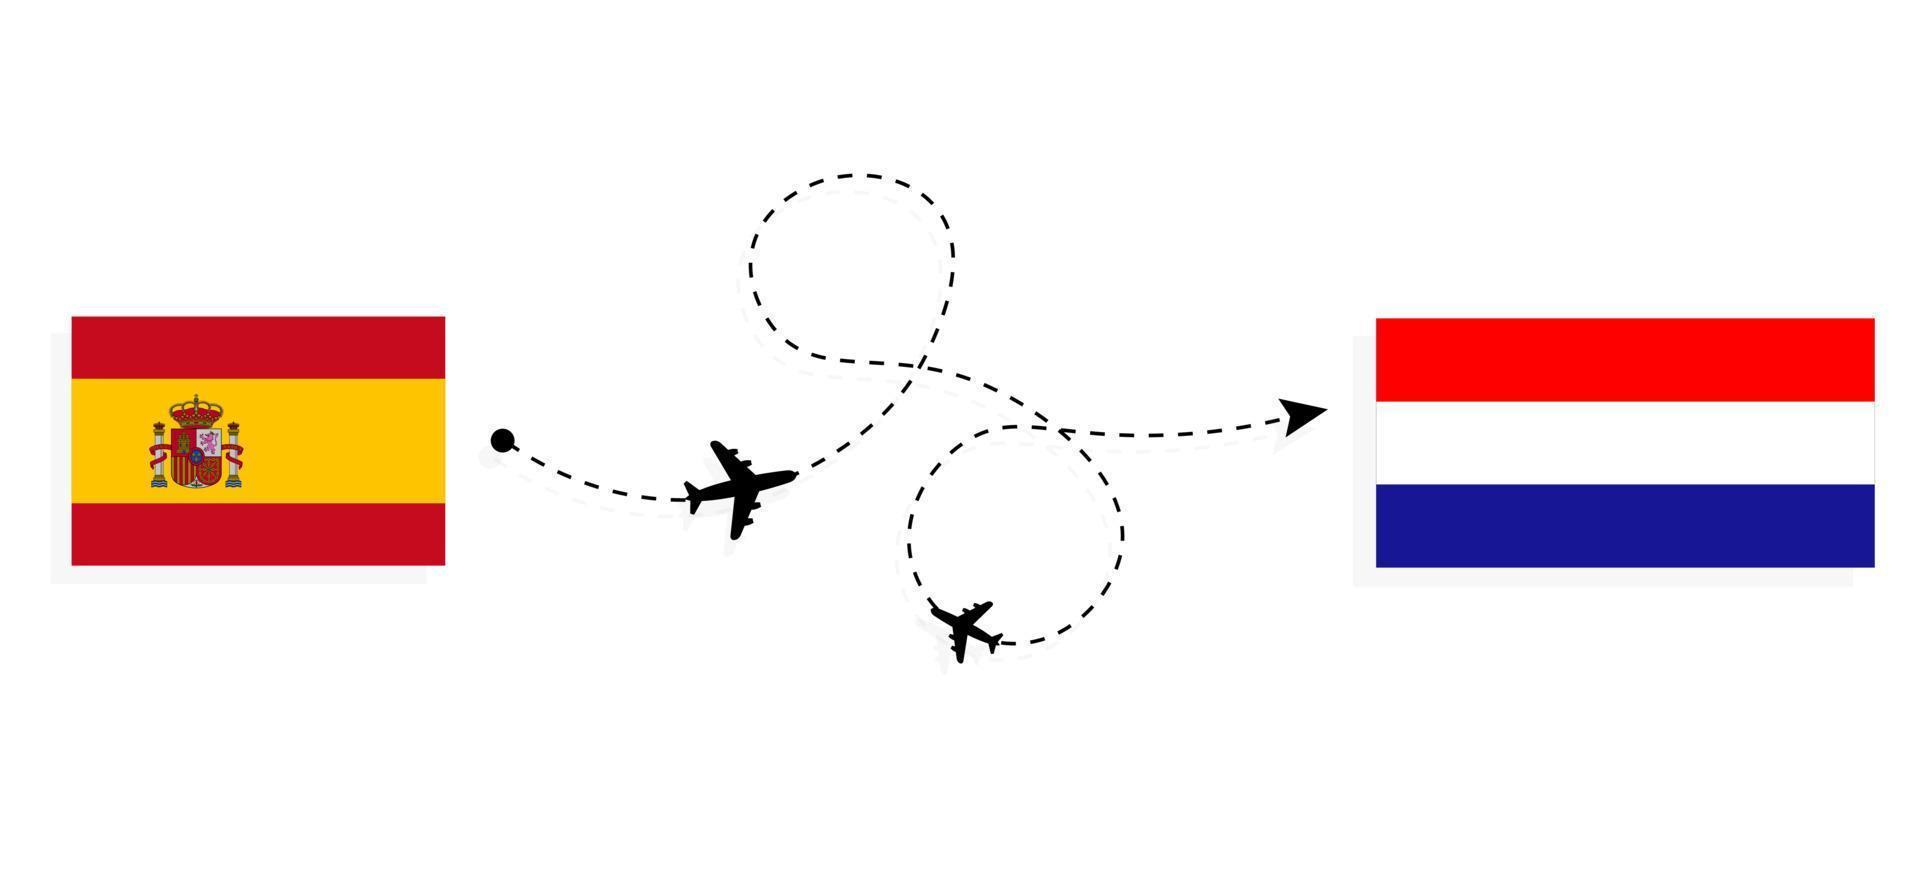 vol et voyage de l'espagne à la croatie par concept de voyage en avion de passagers vecteur